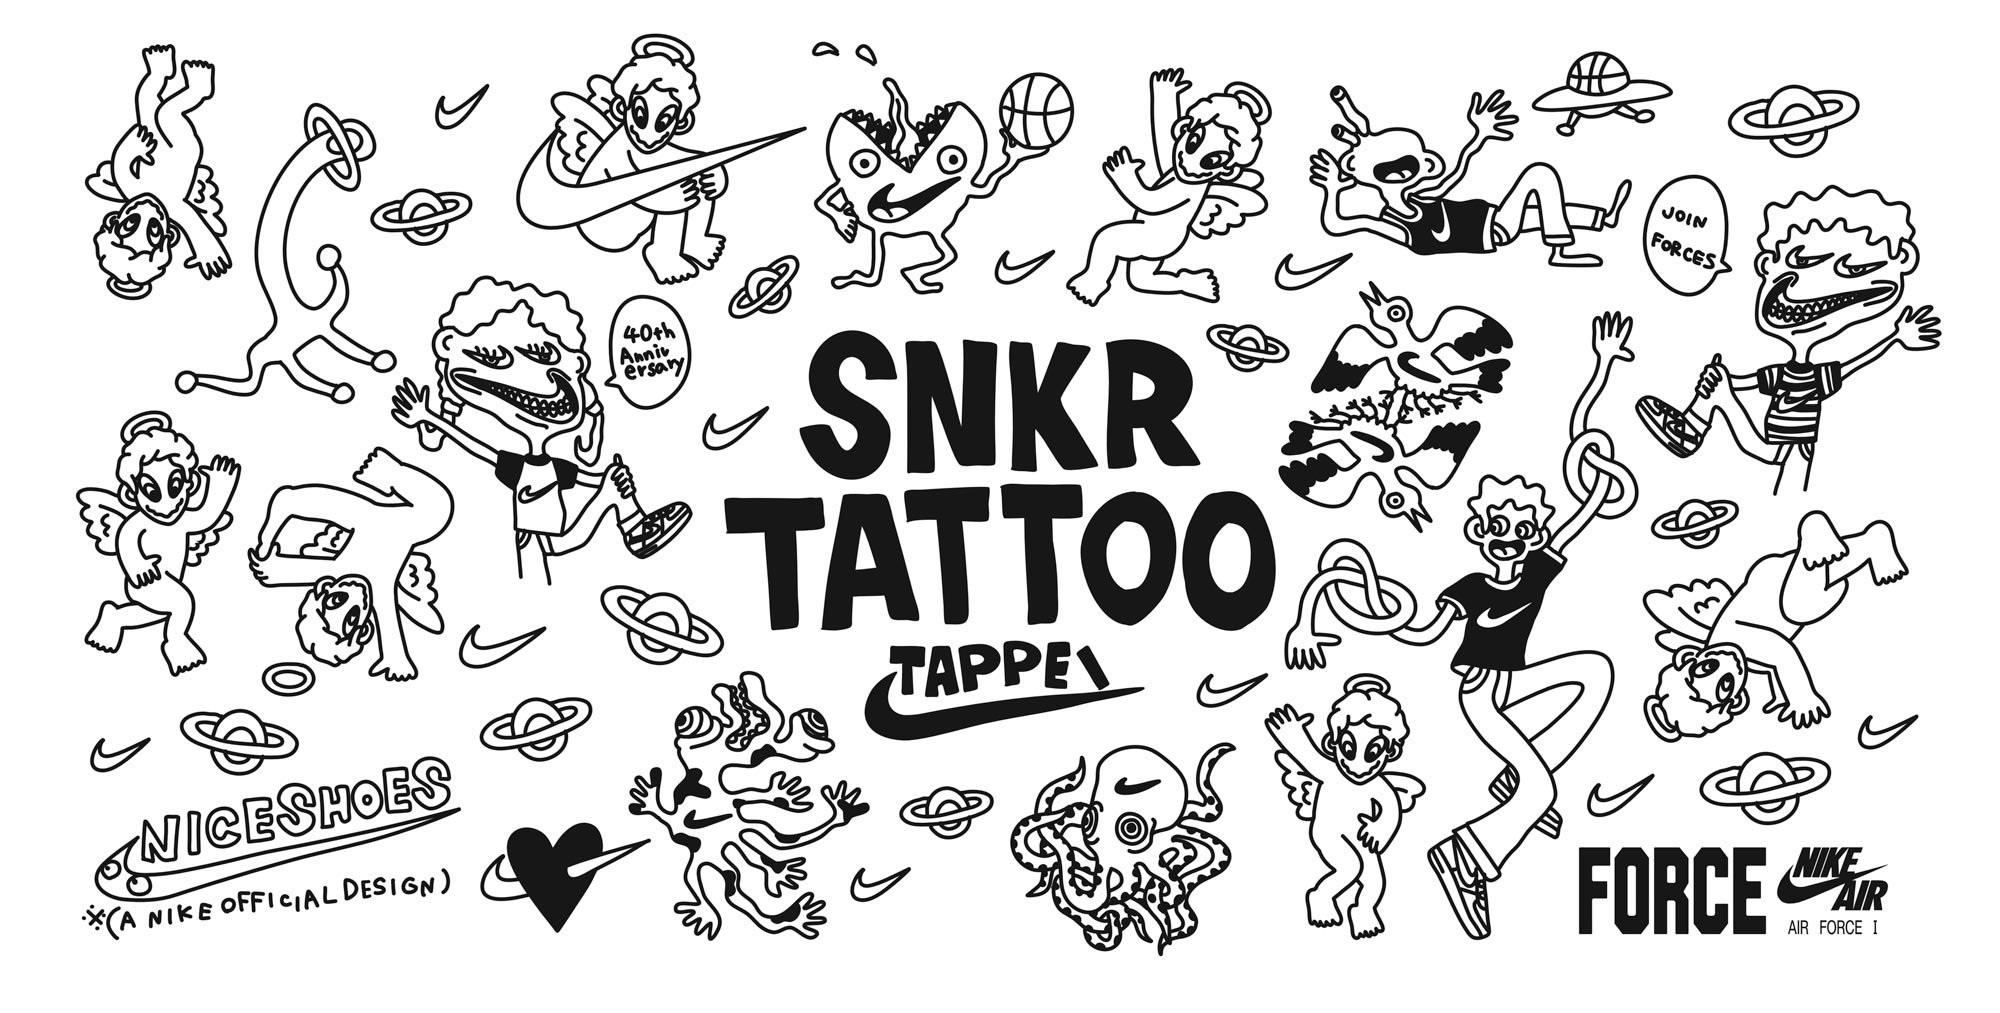 ナイキがタトゥーアーティストtappeiによる Snkr Tattoo 開催 エア フォース 1の40周年記念